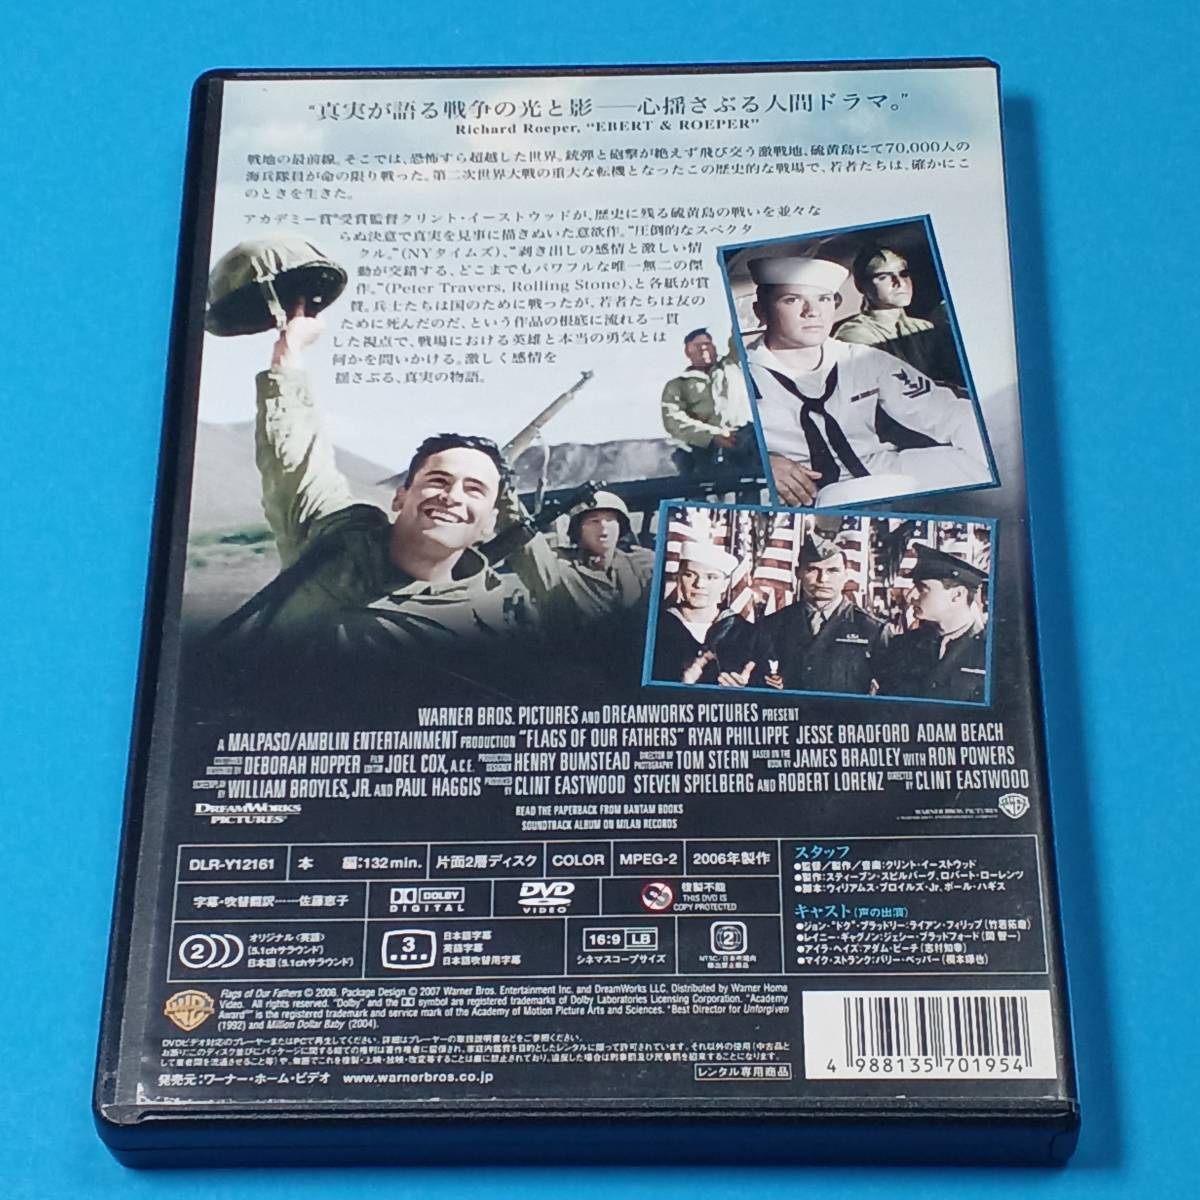 DVD『 父親たちの星条旗 』2 戦争映画 レンタル専用レンタルUP クリント・イーストウッド監督 戦争を終わらせた一枚の写真 その真実。_画像2